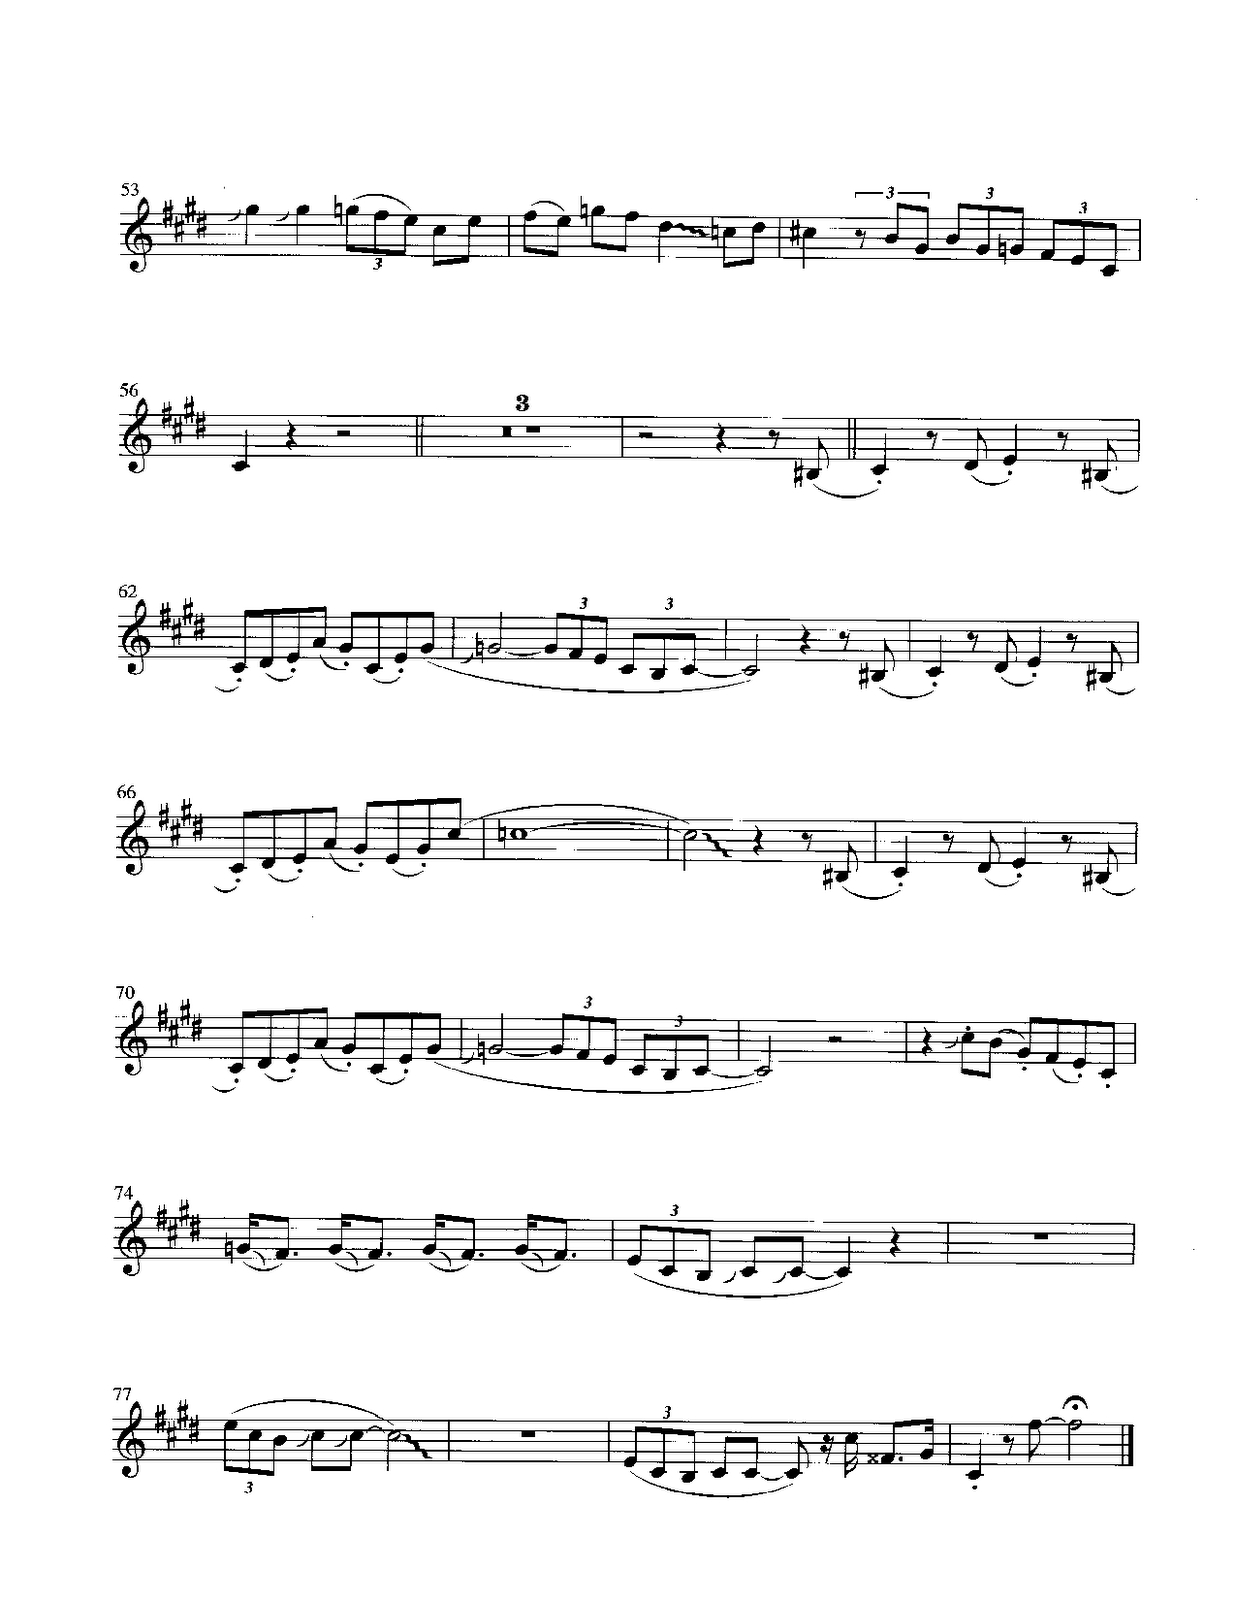 Pink Panther - Henry Mancini Score And Track (Sheet Music Free - Free Printable Alto Saxophone Sheet Music Pink Panther